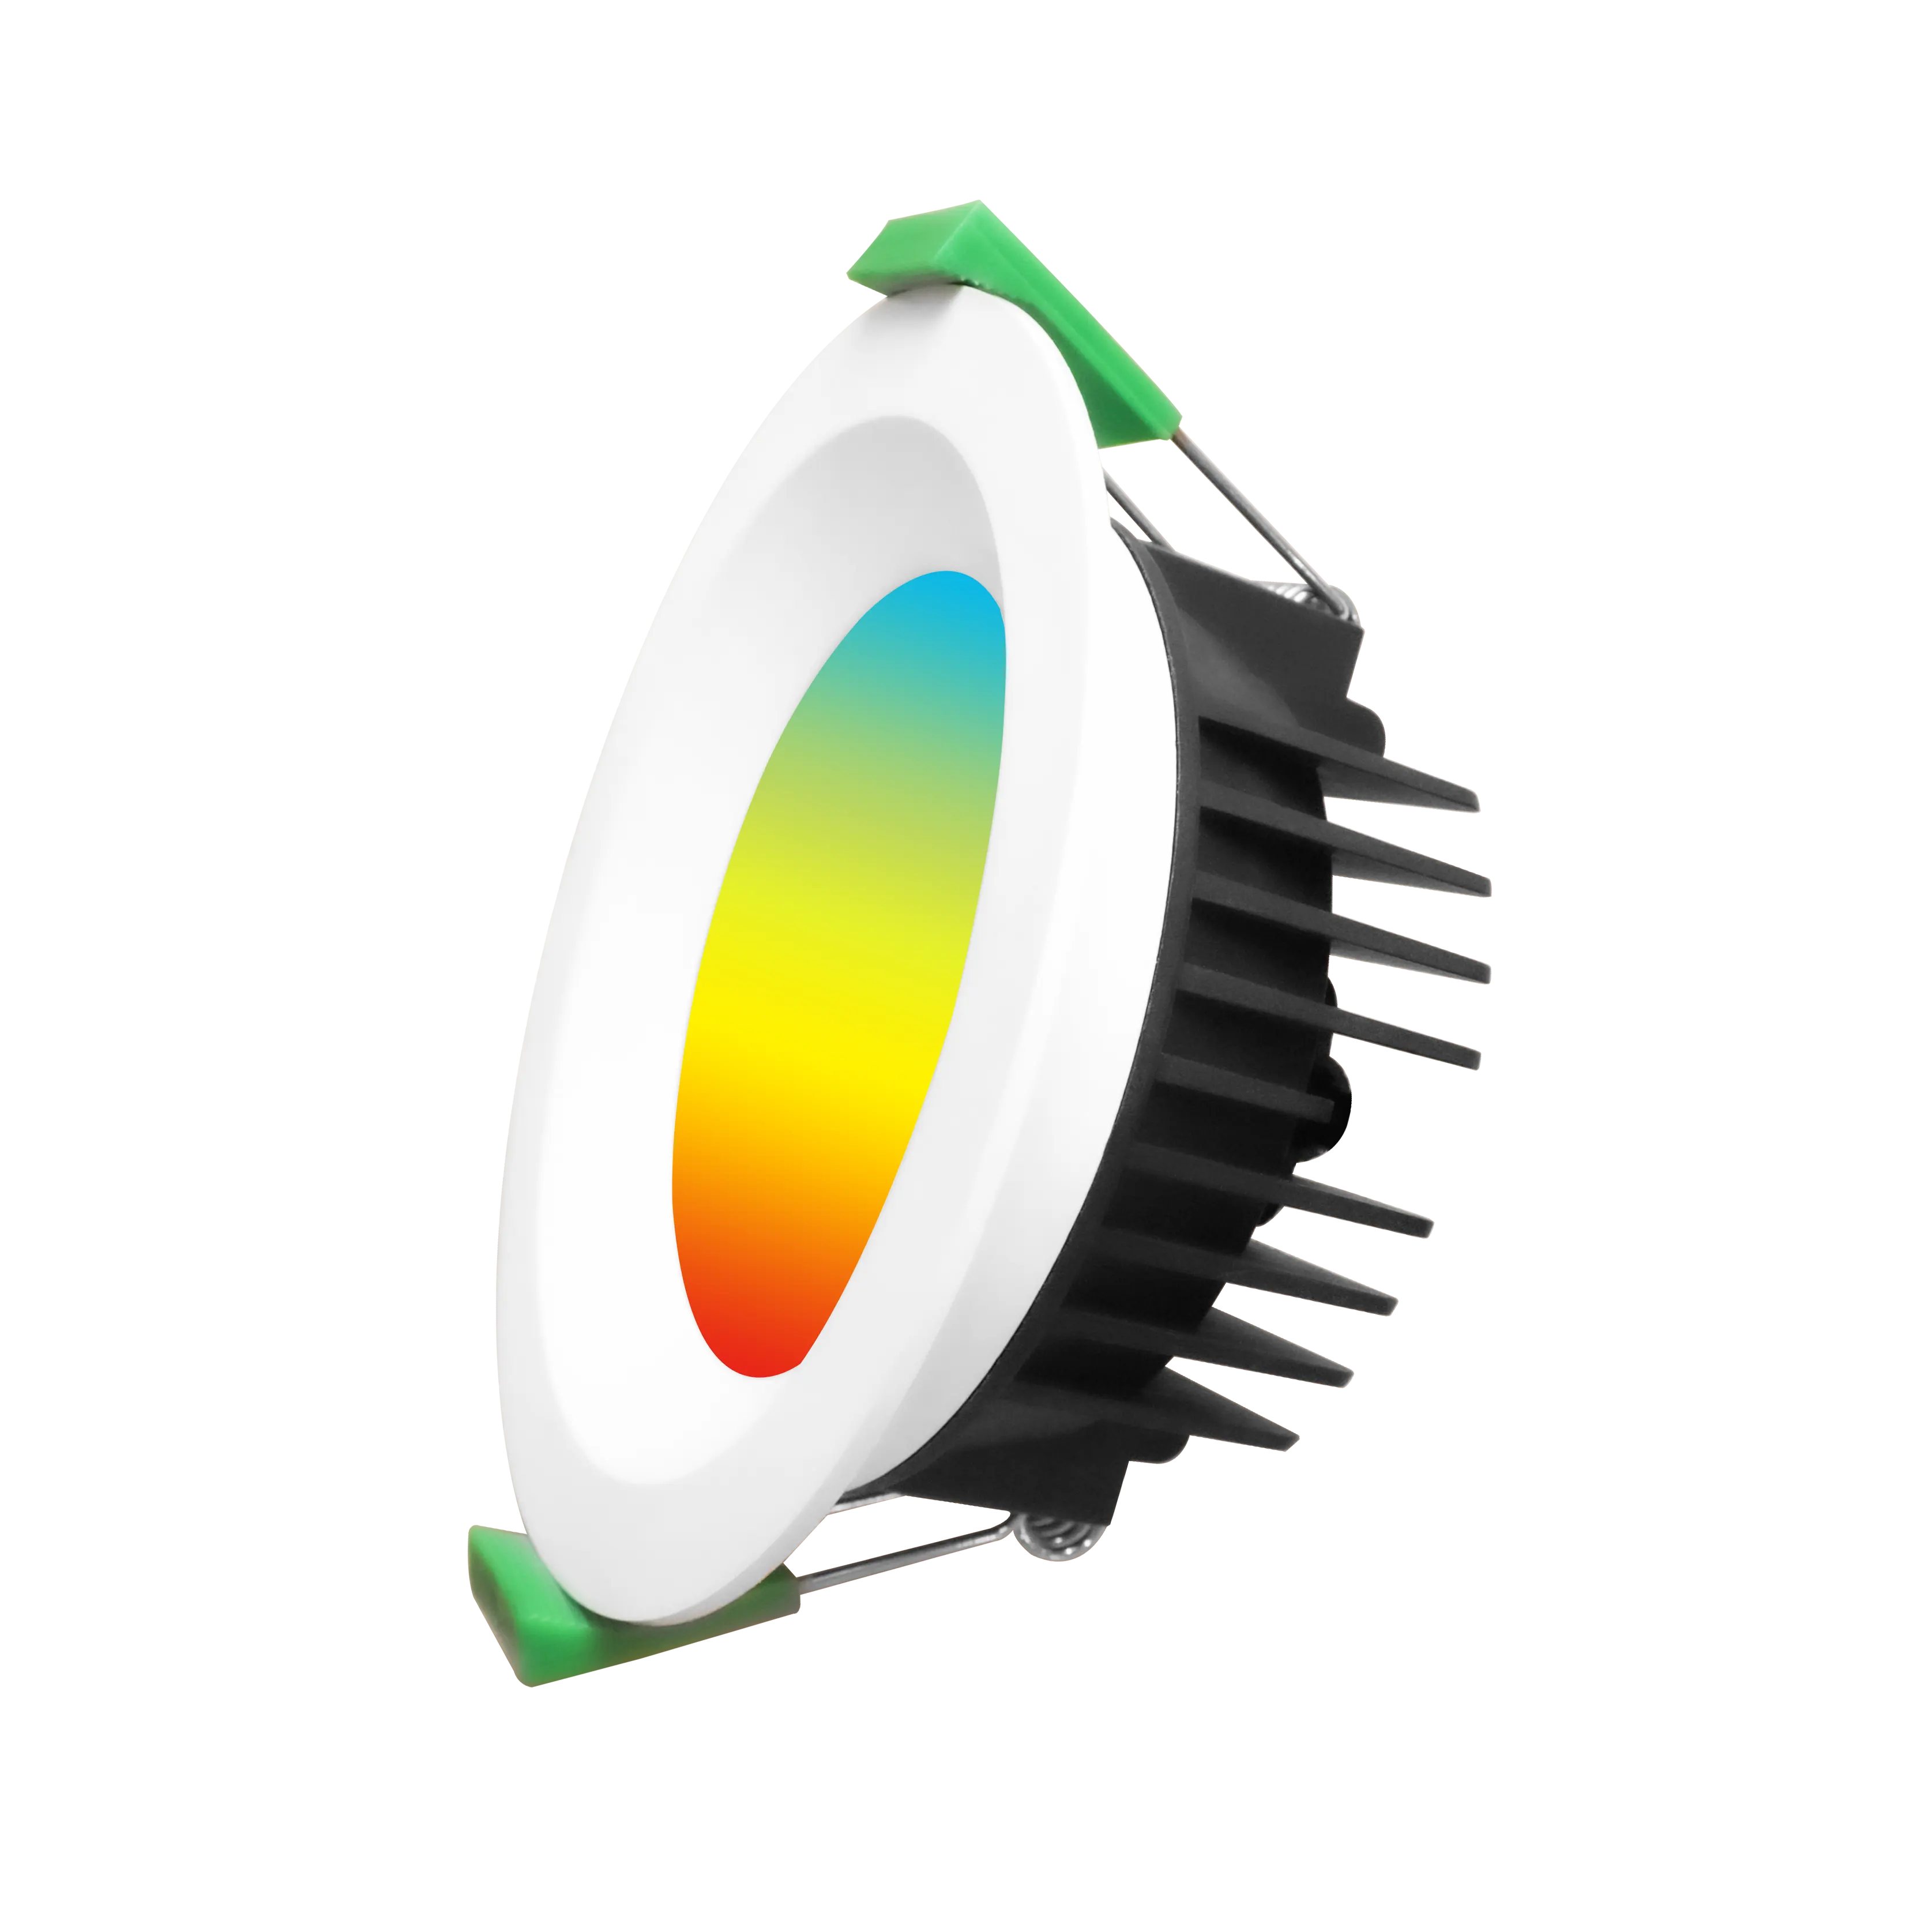 Luz de fundo inteligente LED Alexa Tuya Google assistente RGB CW regulável luz facial plana luz inteligente luzes para casa inteligente